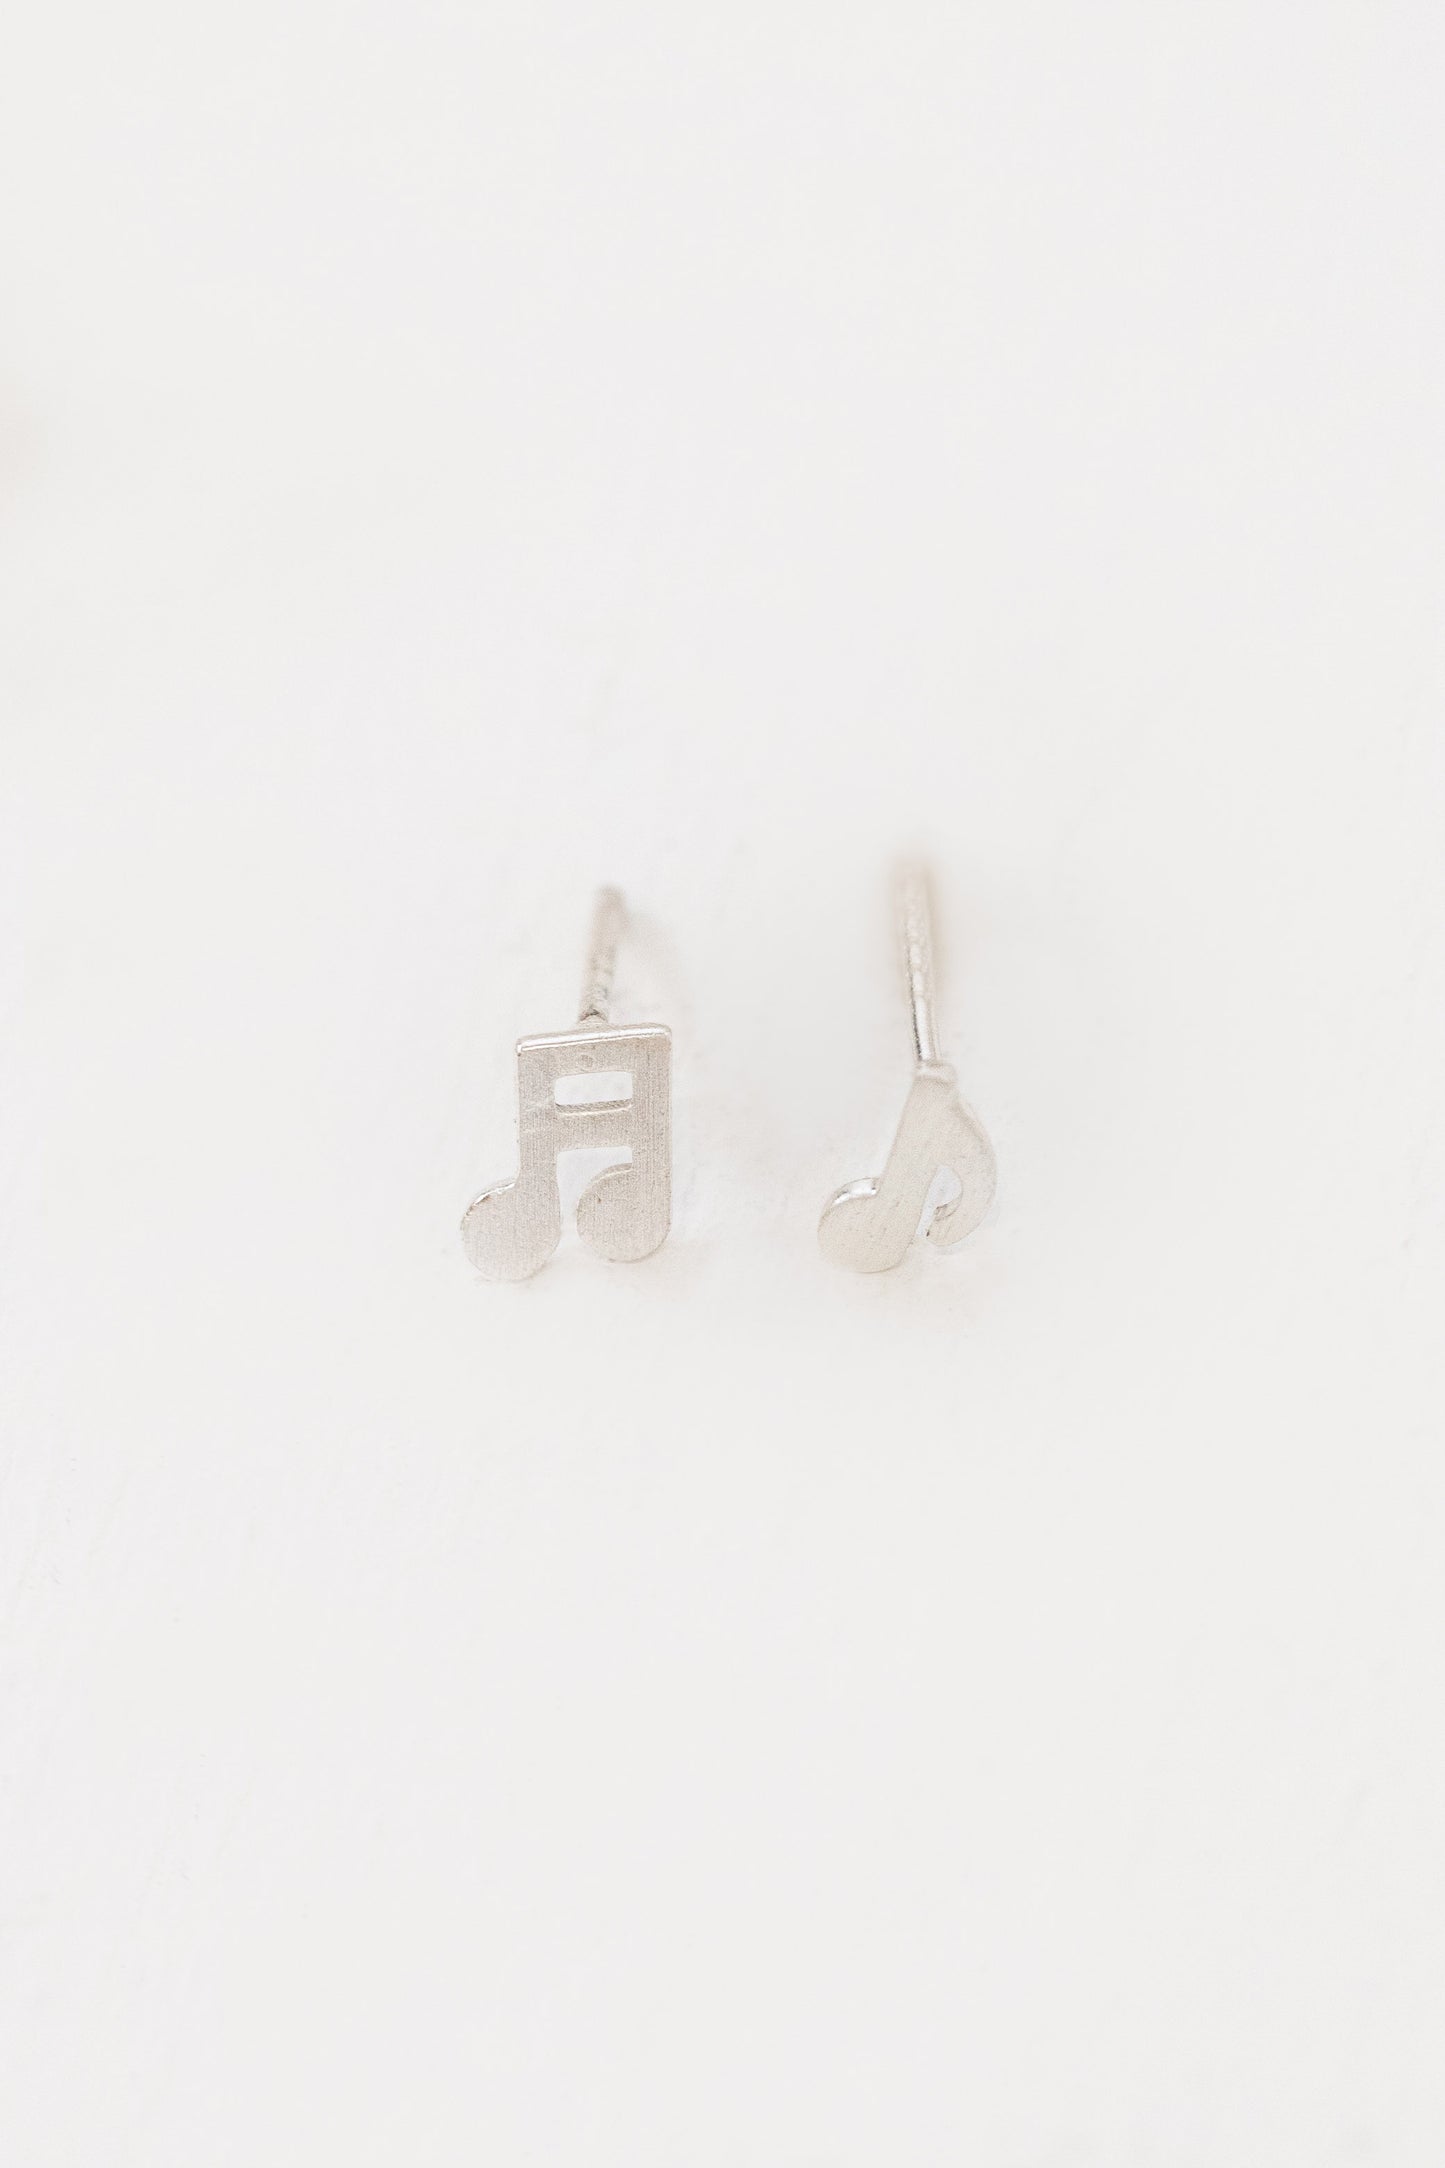 Musical Note Earrings